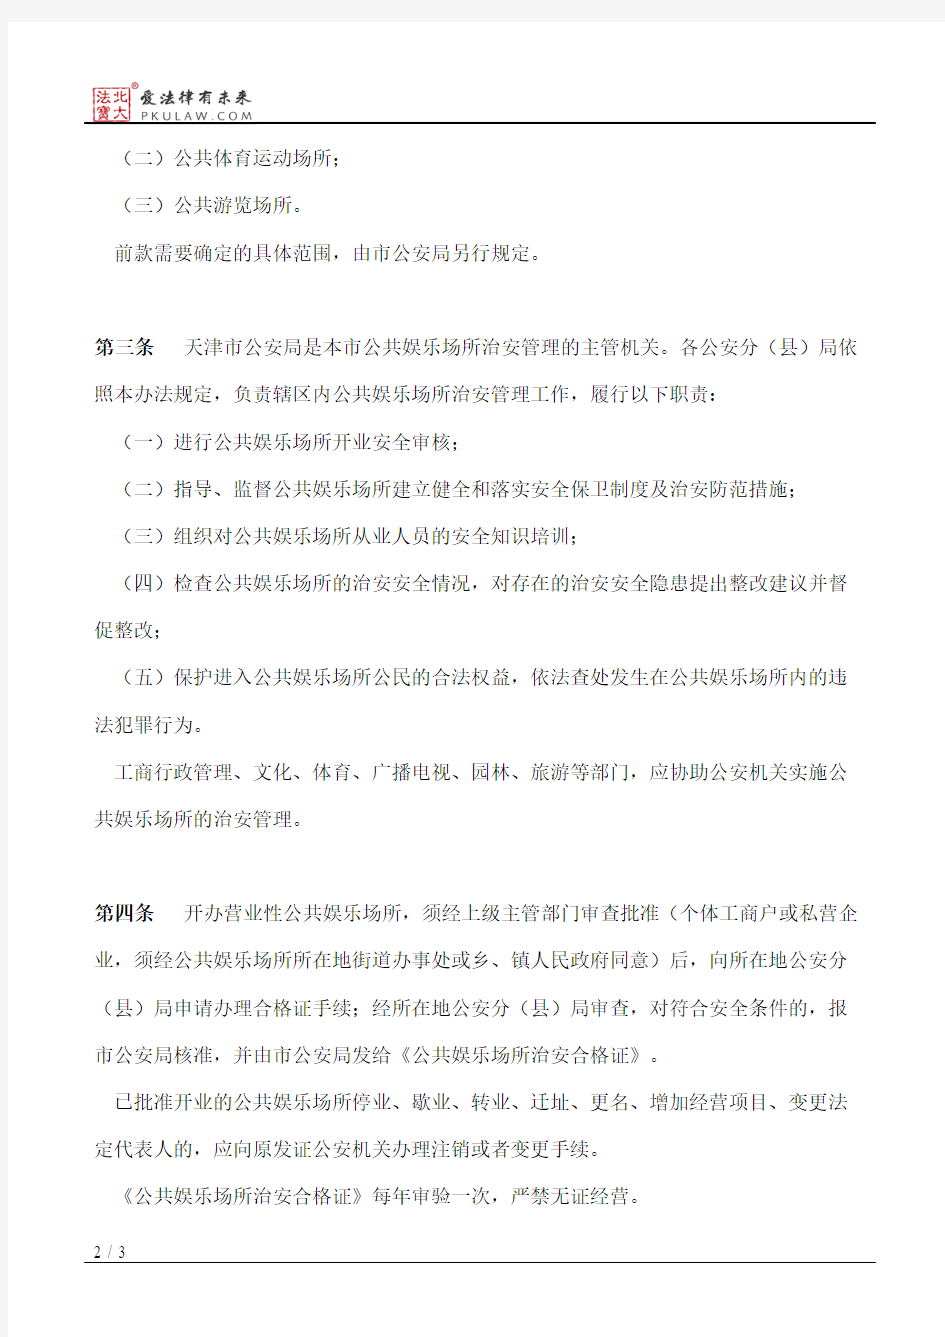 天津市公共娱乐场所治安管理办法(97修订)